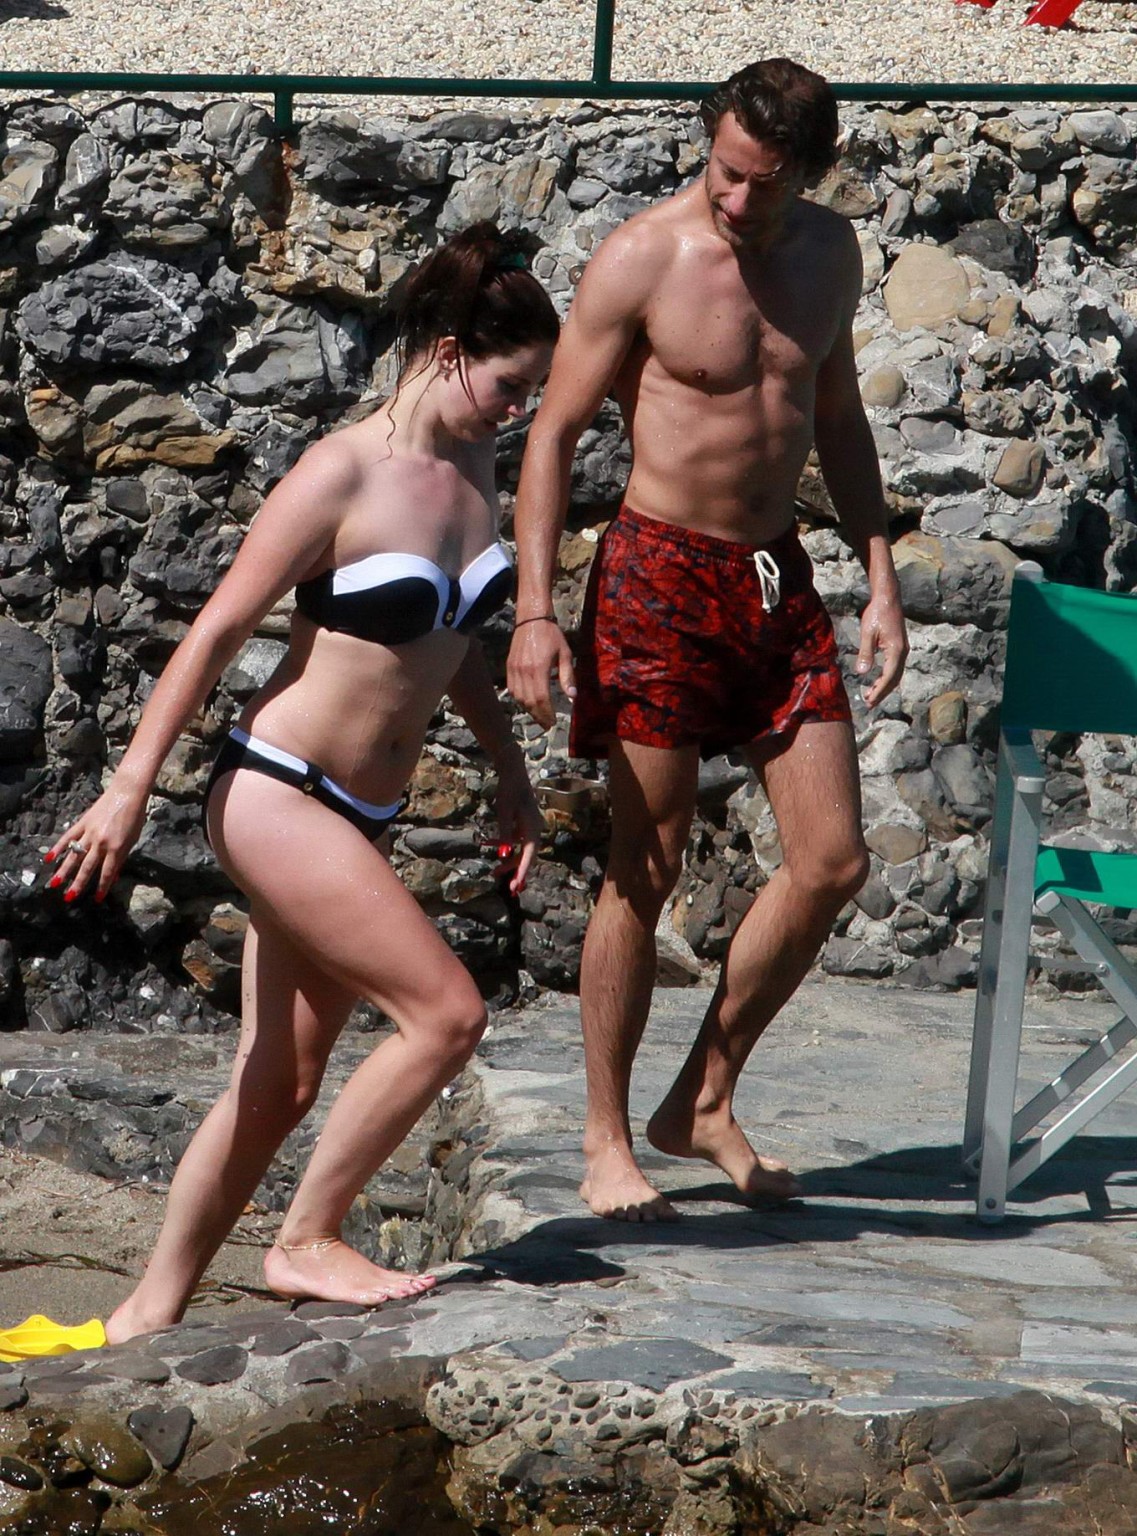 Lana del rey portant un bikini monochrome sur une plage en italie
 #75191491